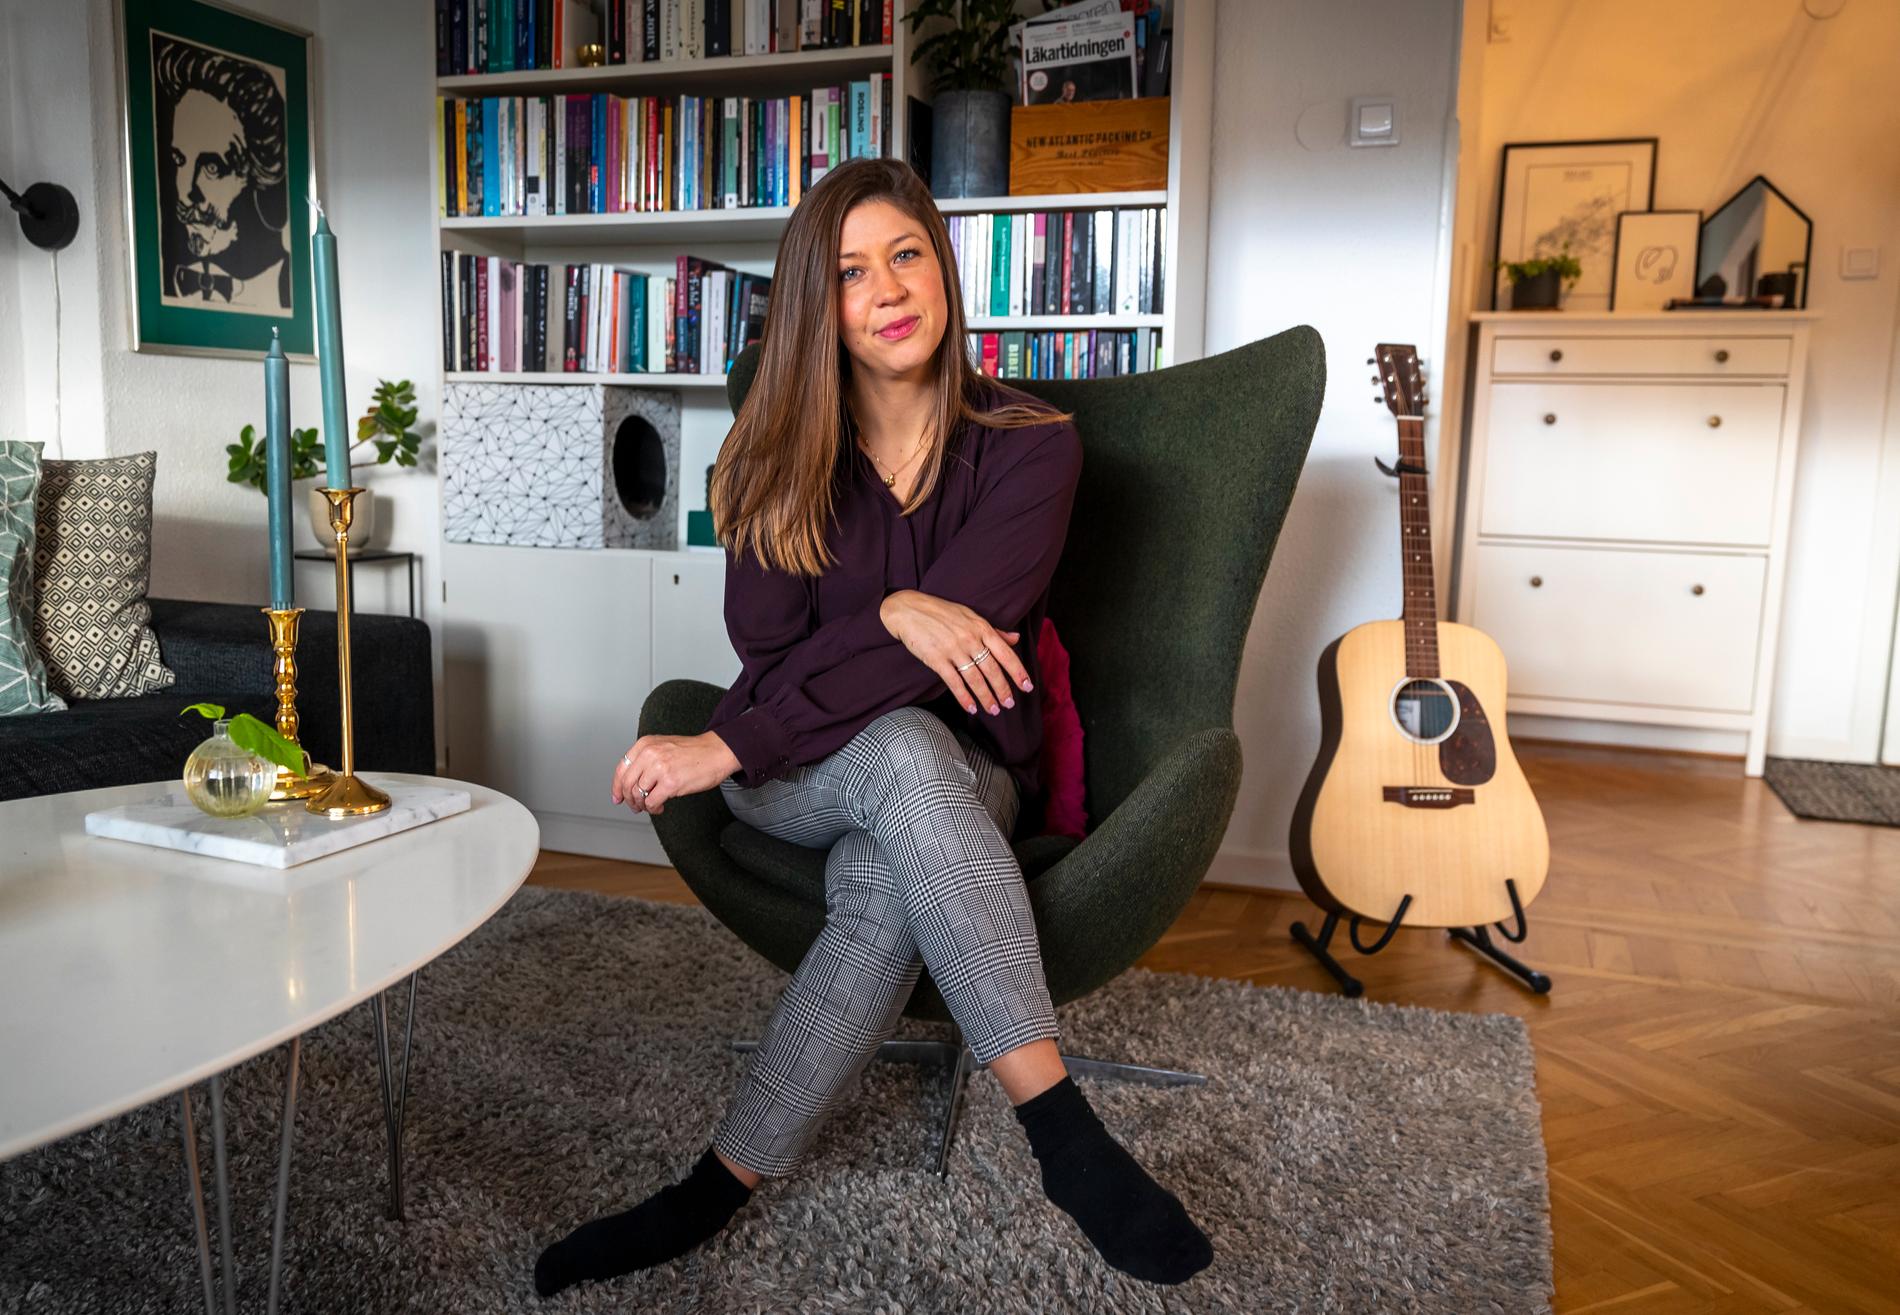 Redan som barn blev Elisabeth Svensson intressera för pengar och sparande. Några månader efter sin 30:e födelsedag nådde hon sin första miljon. 